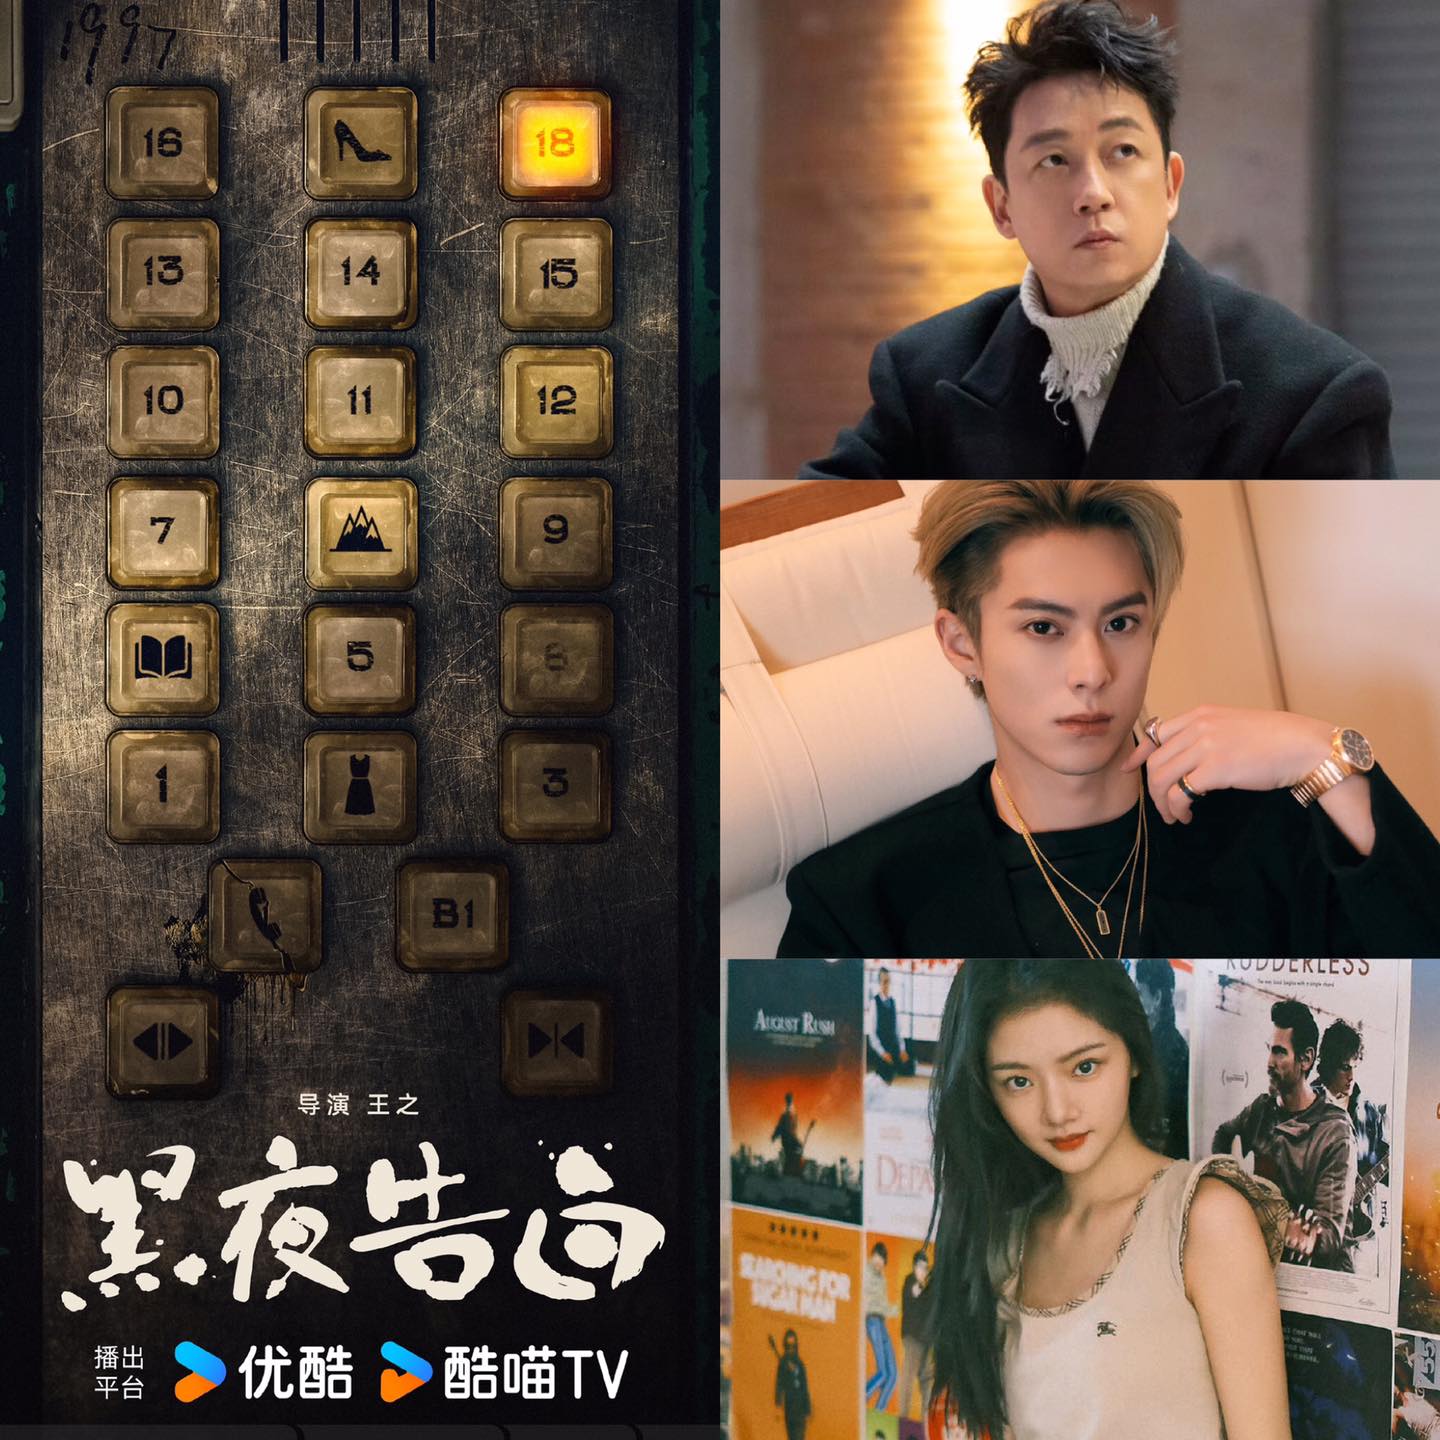 Vương Hạc Đệ lần đầu 'nên duyên' với 'tình cũ màn ảnh' Tiêu Chiến trong phim mới, netizen phản đối vì một điều? - Ảnh 1